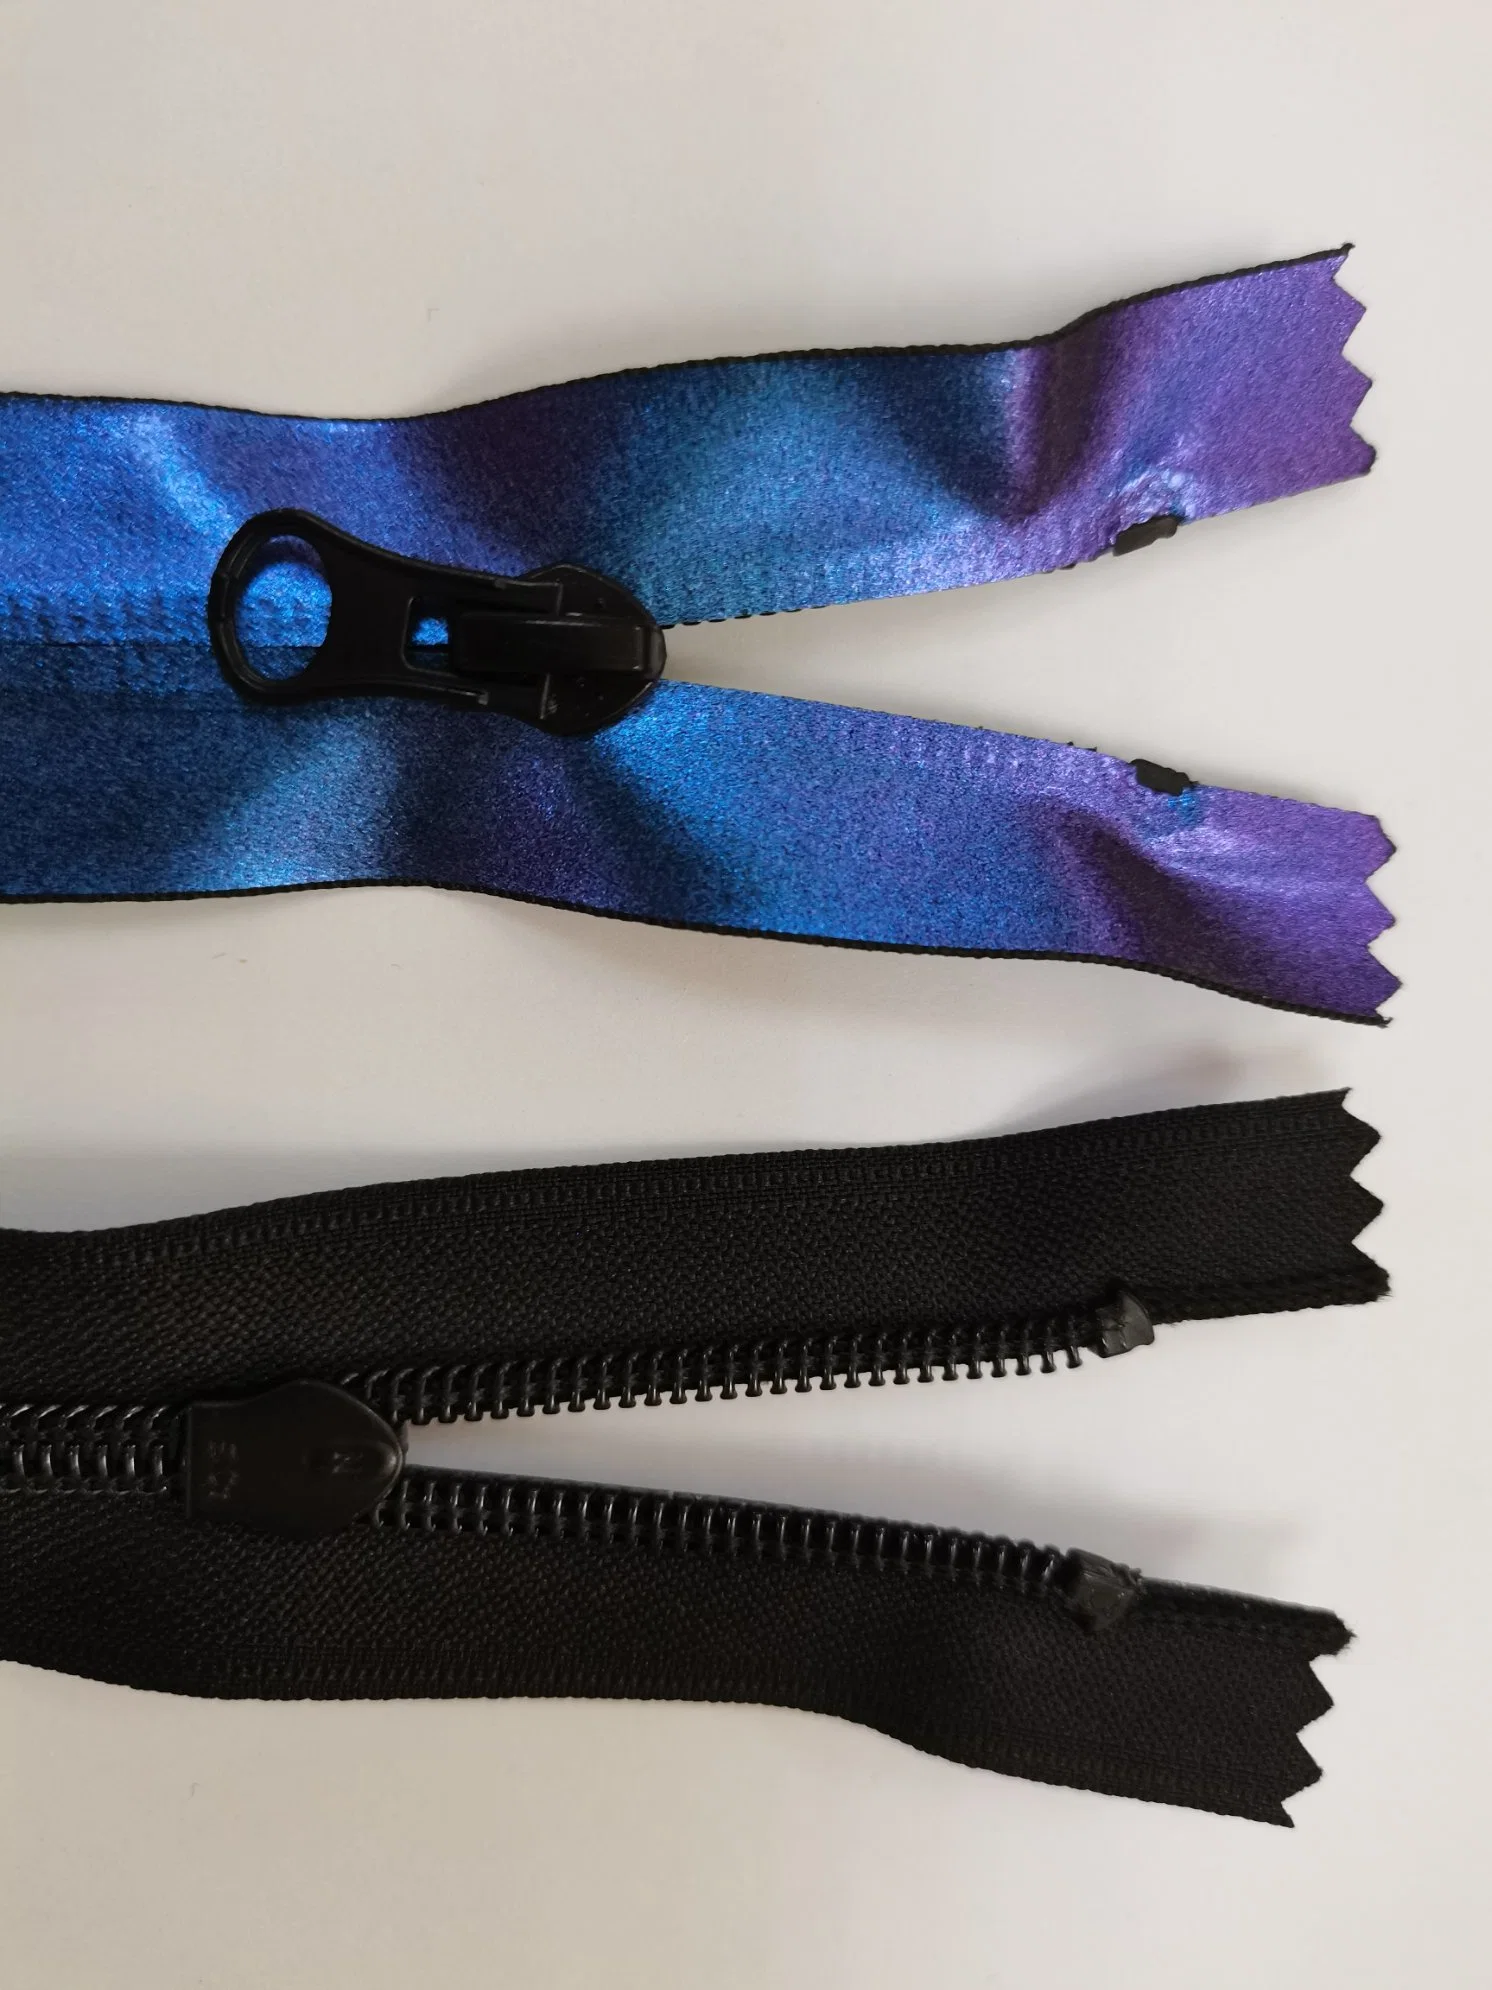 Revestimento à chuva nylon Zipper de 7 pontas abertas com um efeito colorido fantástico